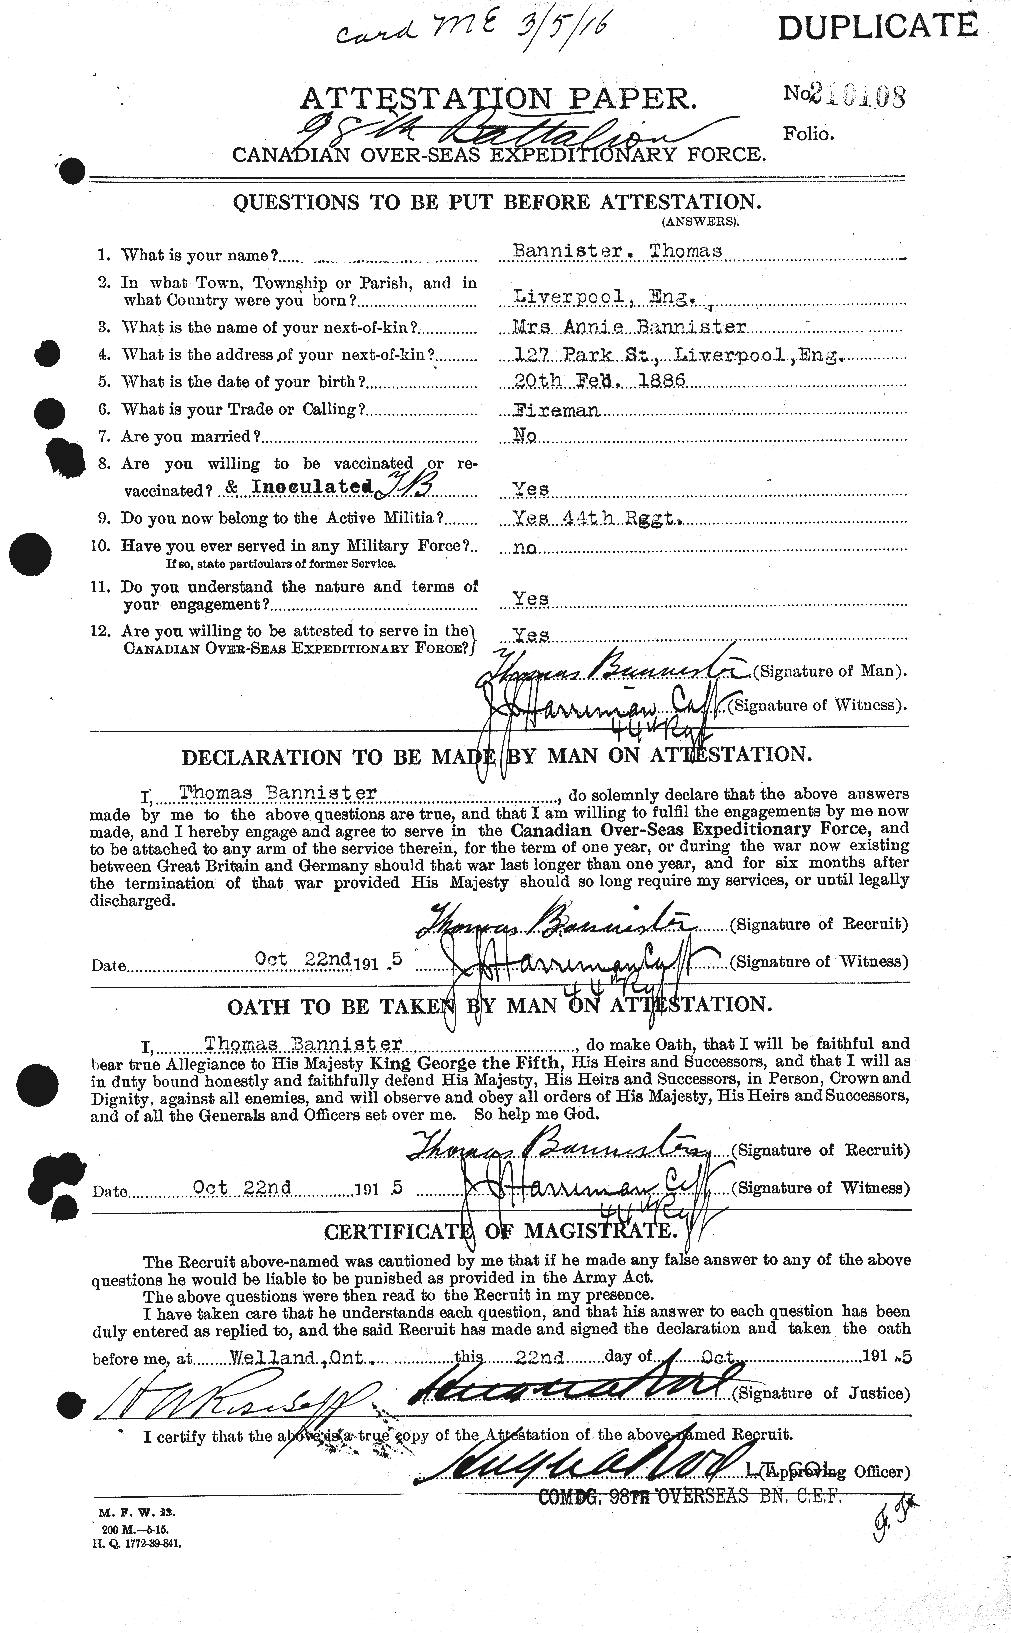 Dossiers du Personnel de la Première Guerre mondiale - CEC 224763a